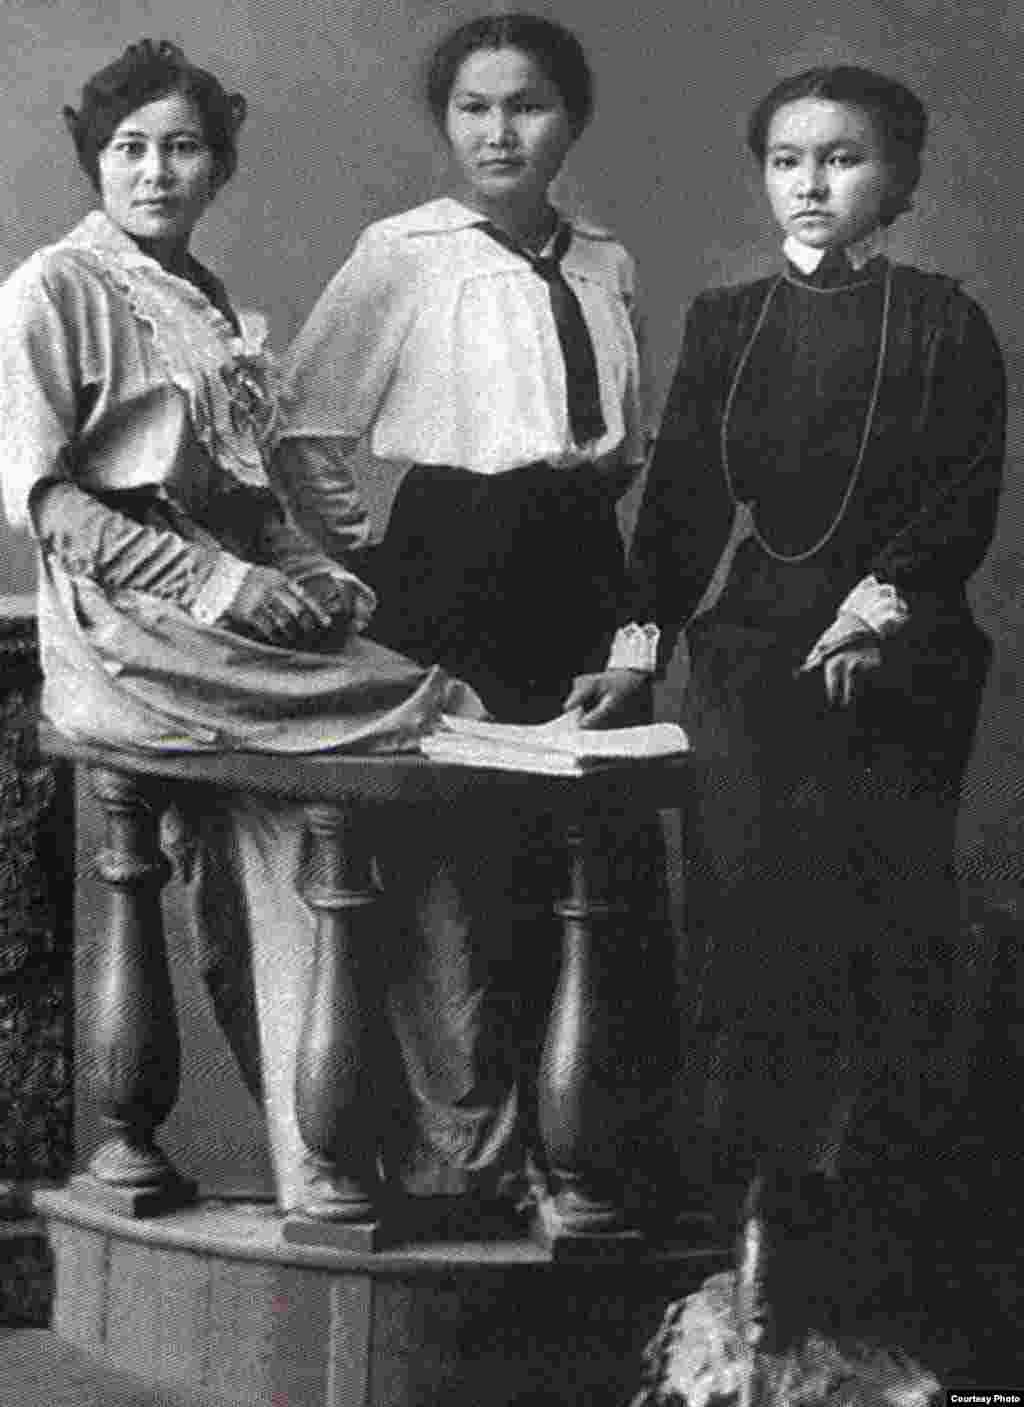 &quot;Қазақ&quot; газетінің тілшілері: Ғайнижамал Дулатова, Аққағаз Досжанова, Гүлайым Балғынбаева. Орынбор, 1914 жыл.